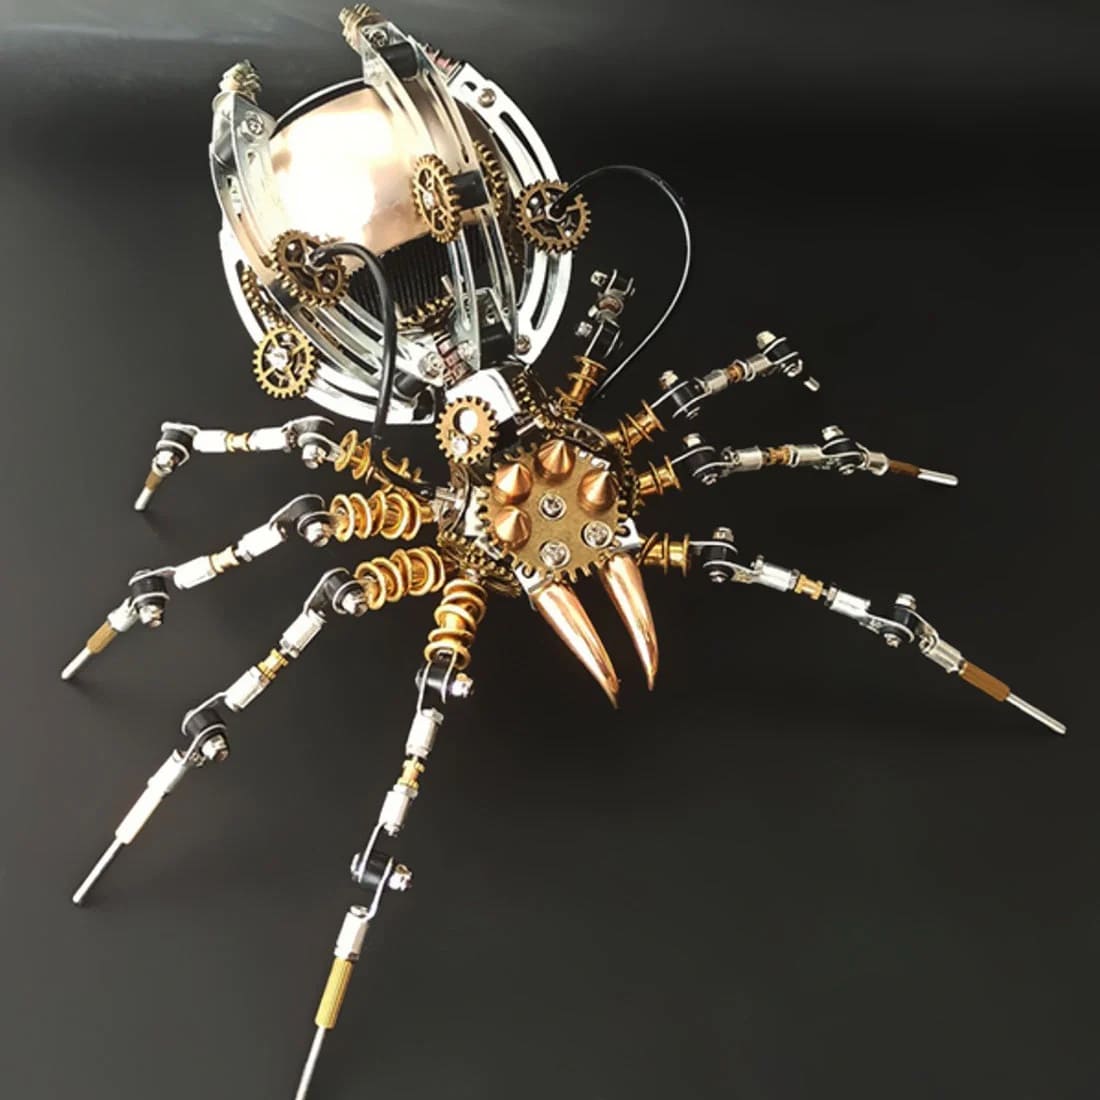 3D модель паука + bluetooth динамик